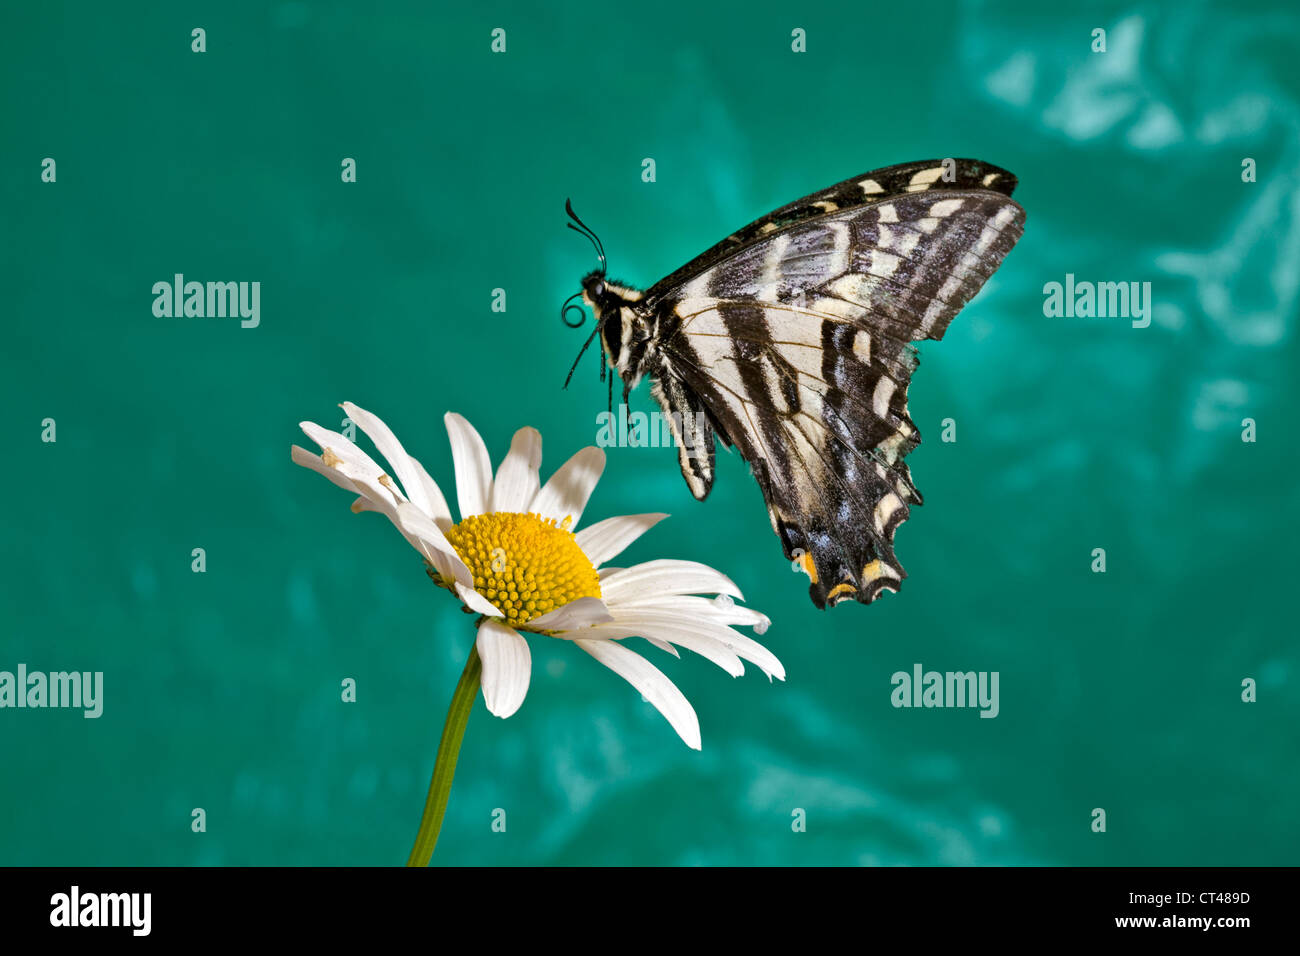 Un papillon noir sur le point d'atterrir sur une marguerite blanche Banque D'Images